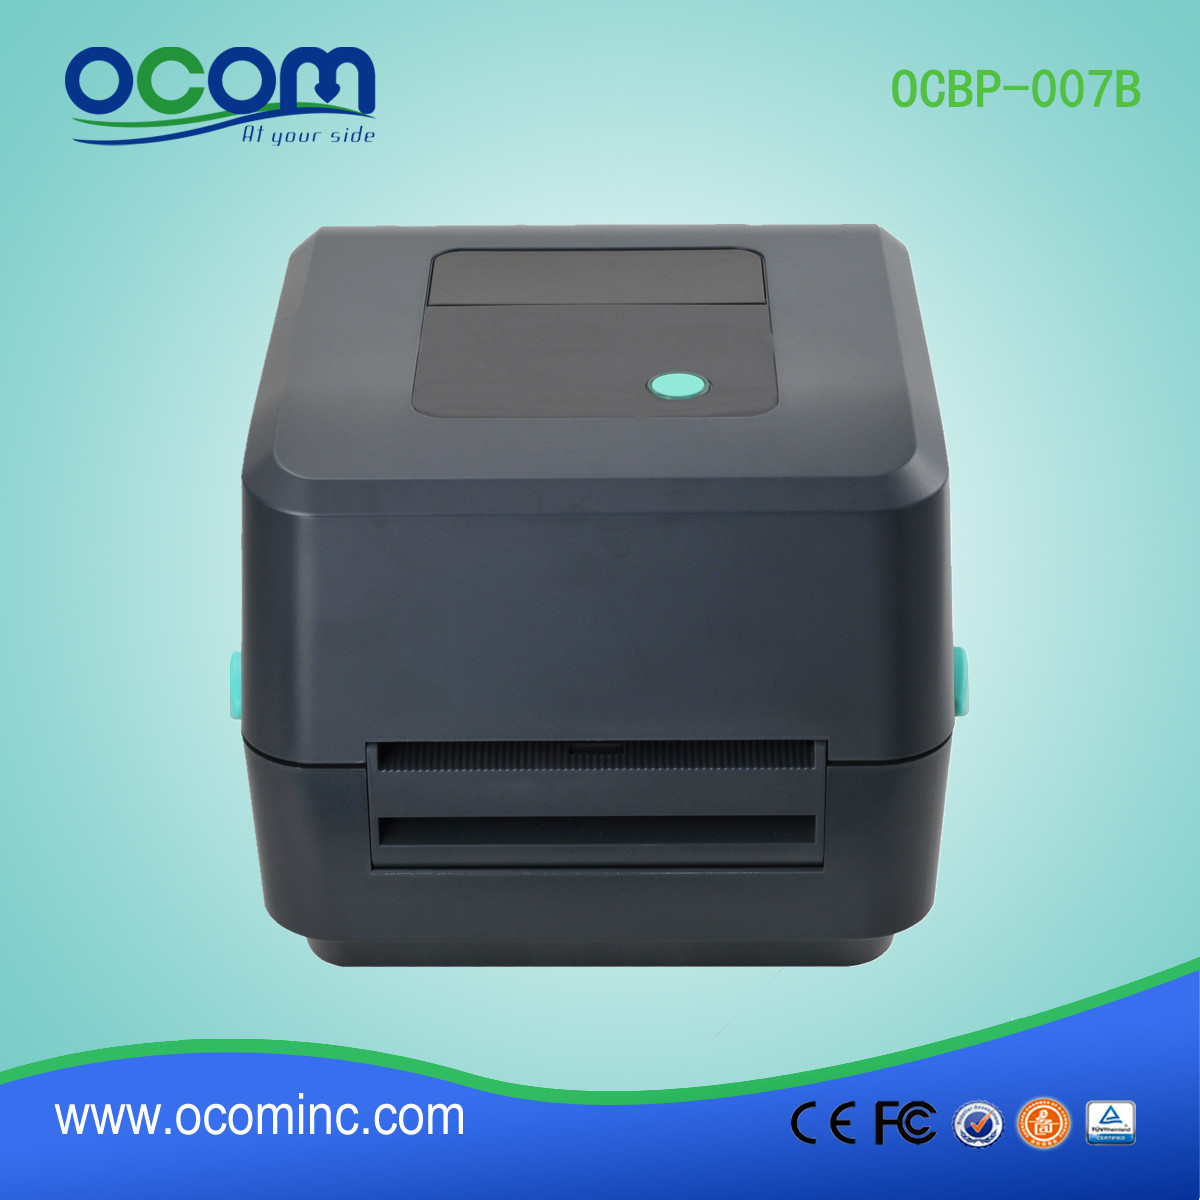 新型号OCBP-007B直接热敏条形码标签打印机